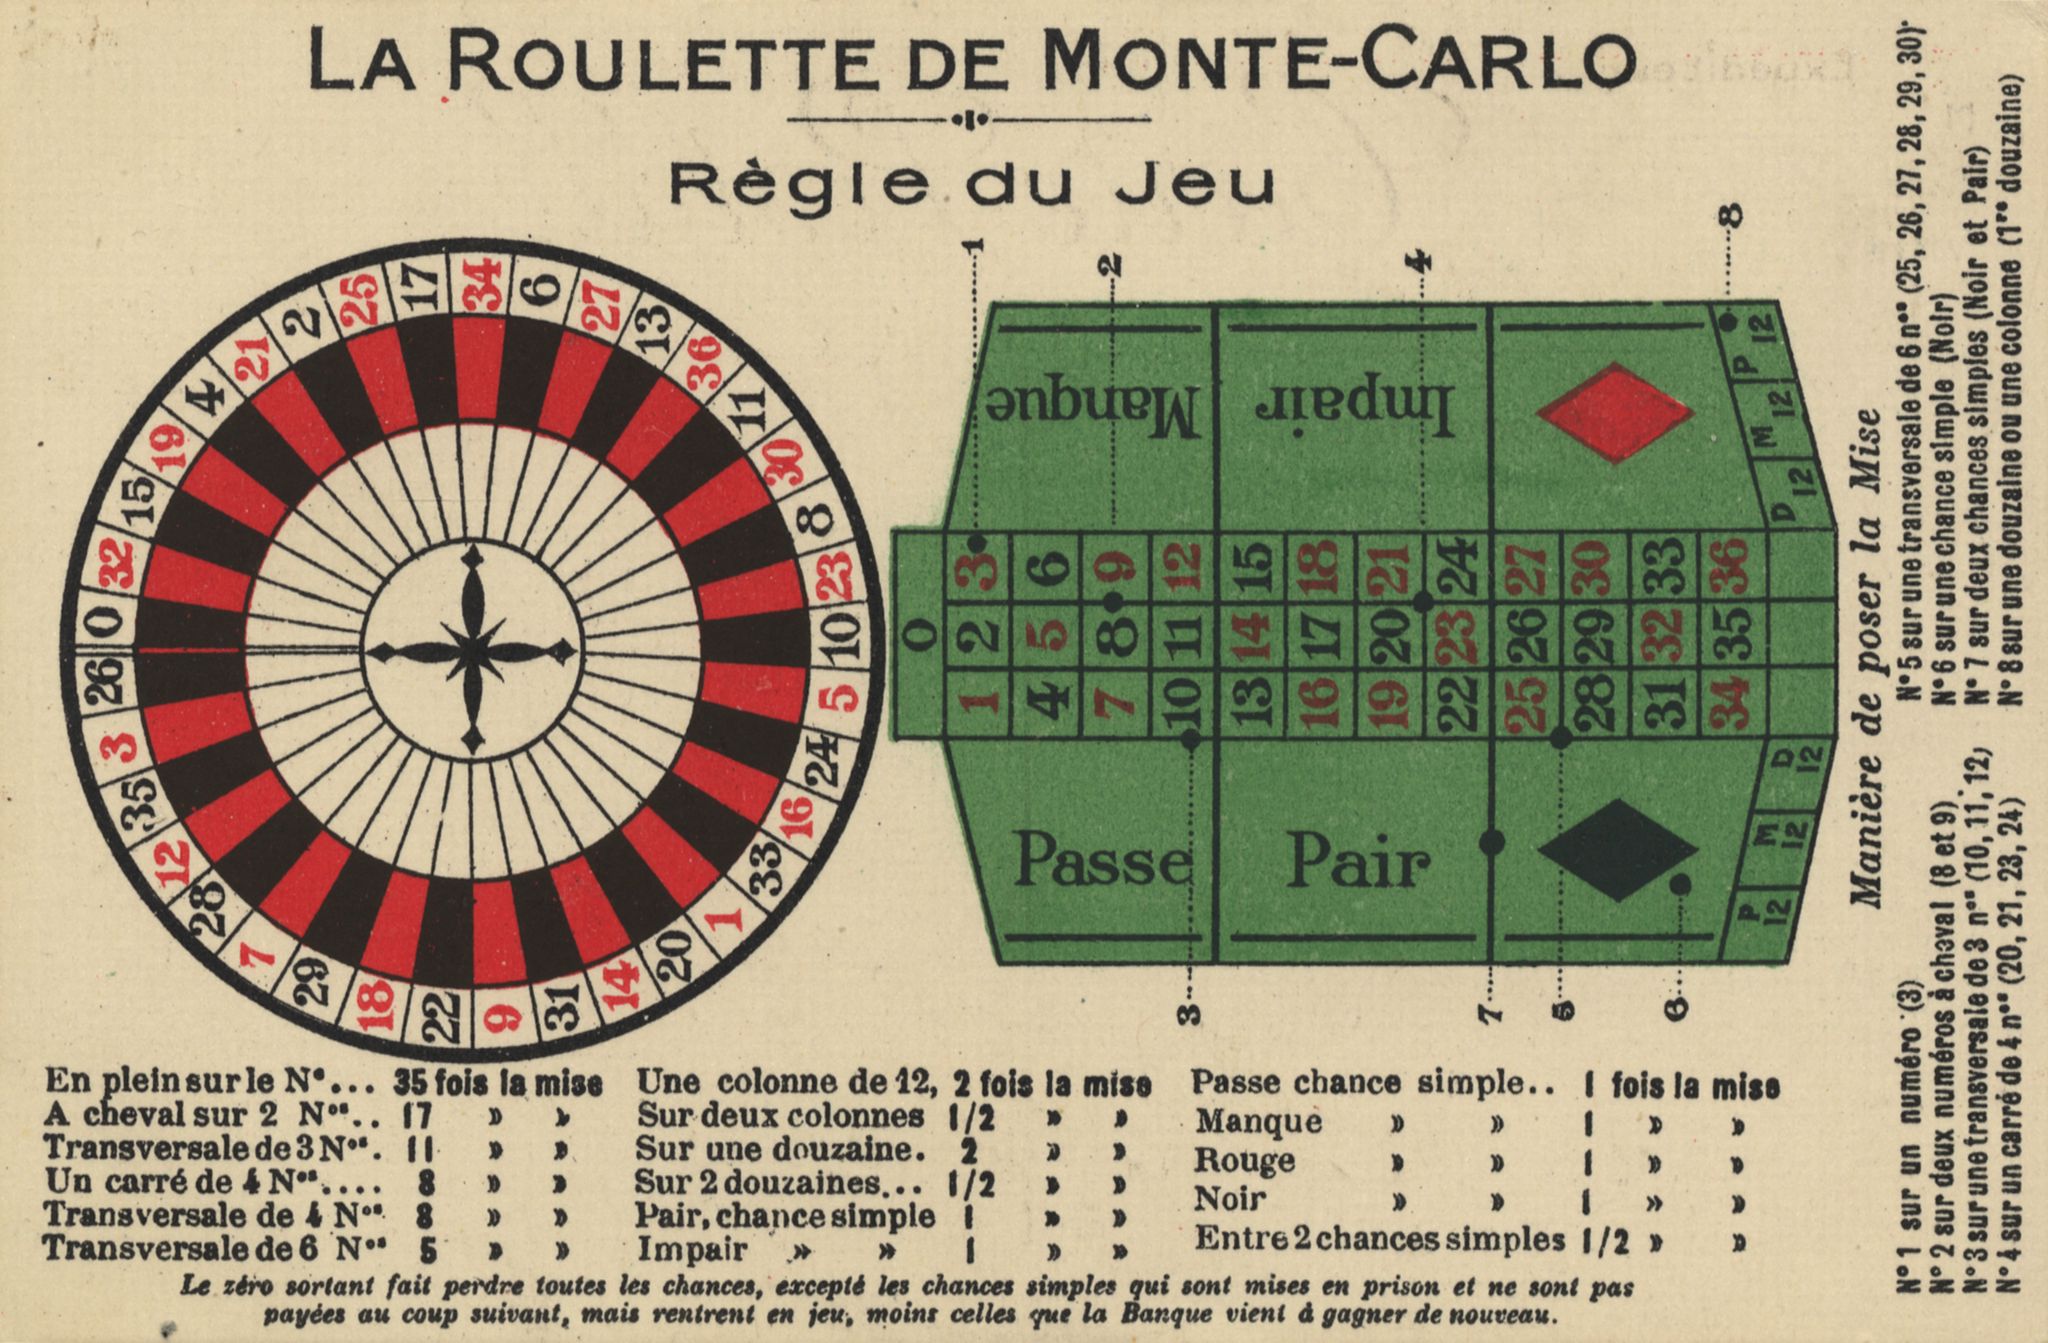 Spielregeln Roulette